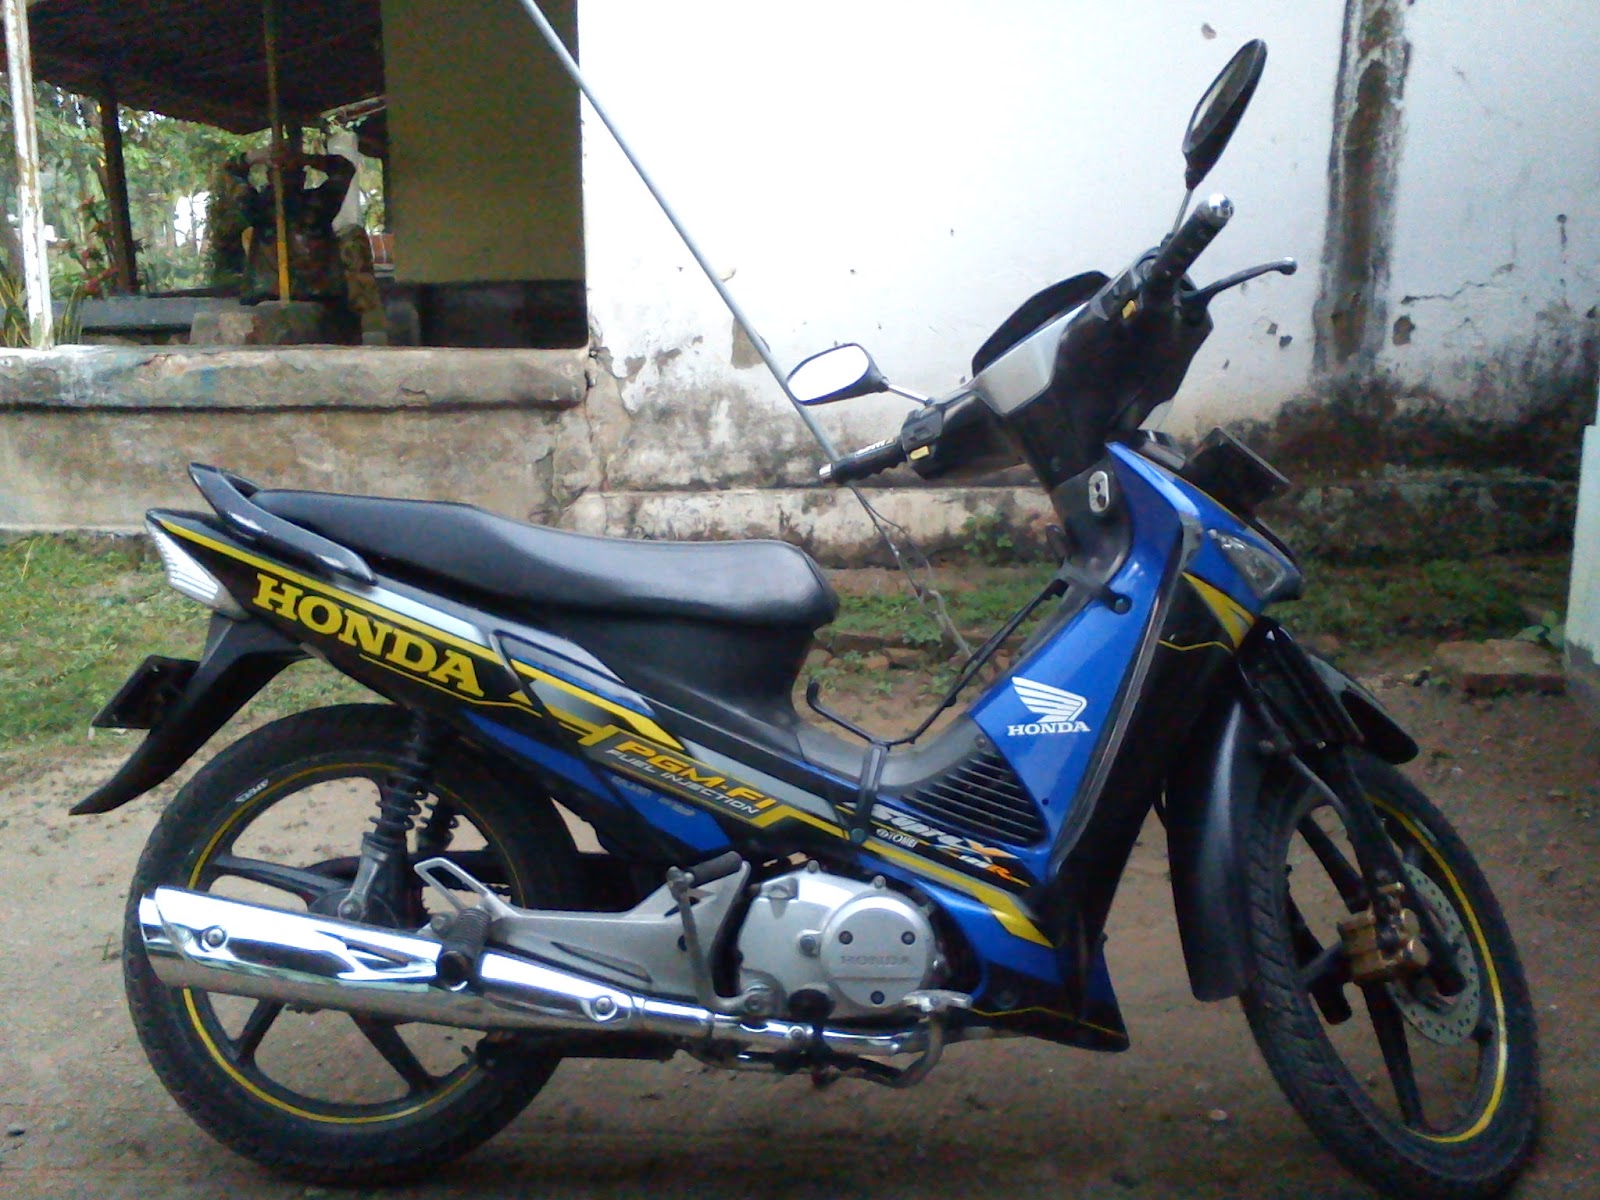 sepeda motor honda 2012 di indonesia five posting